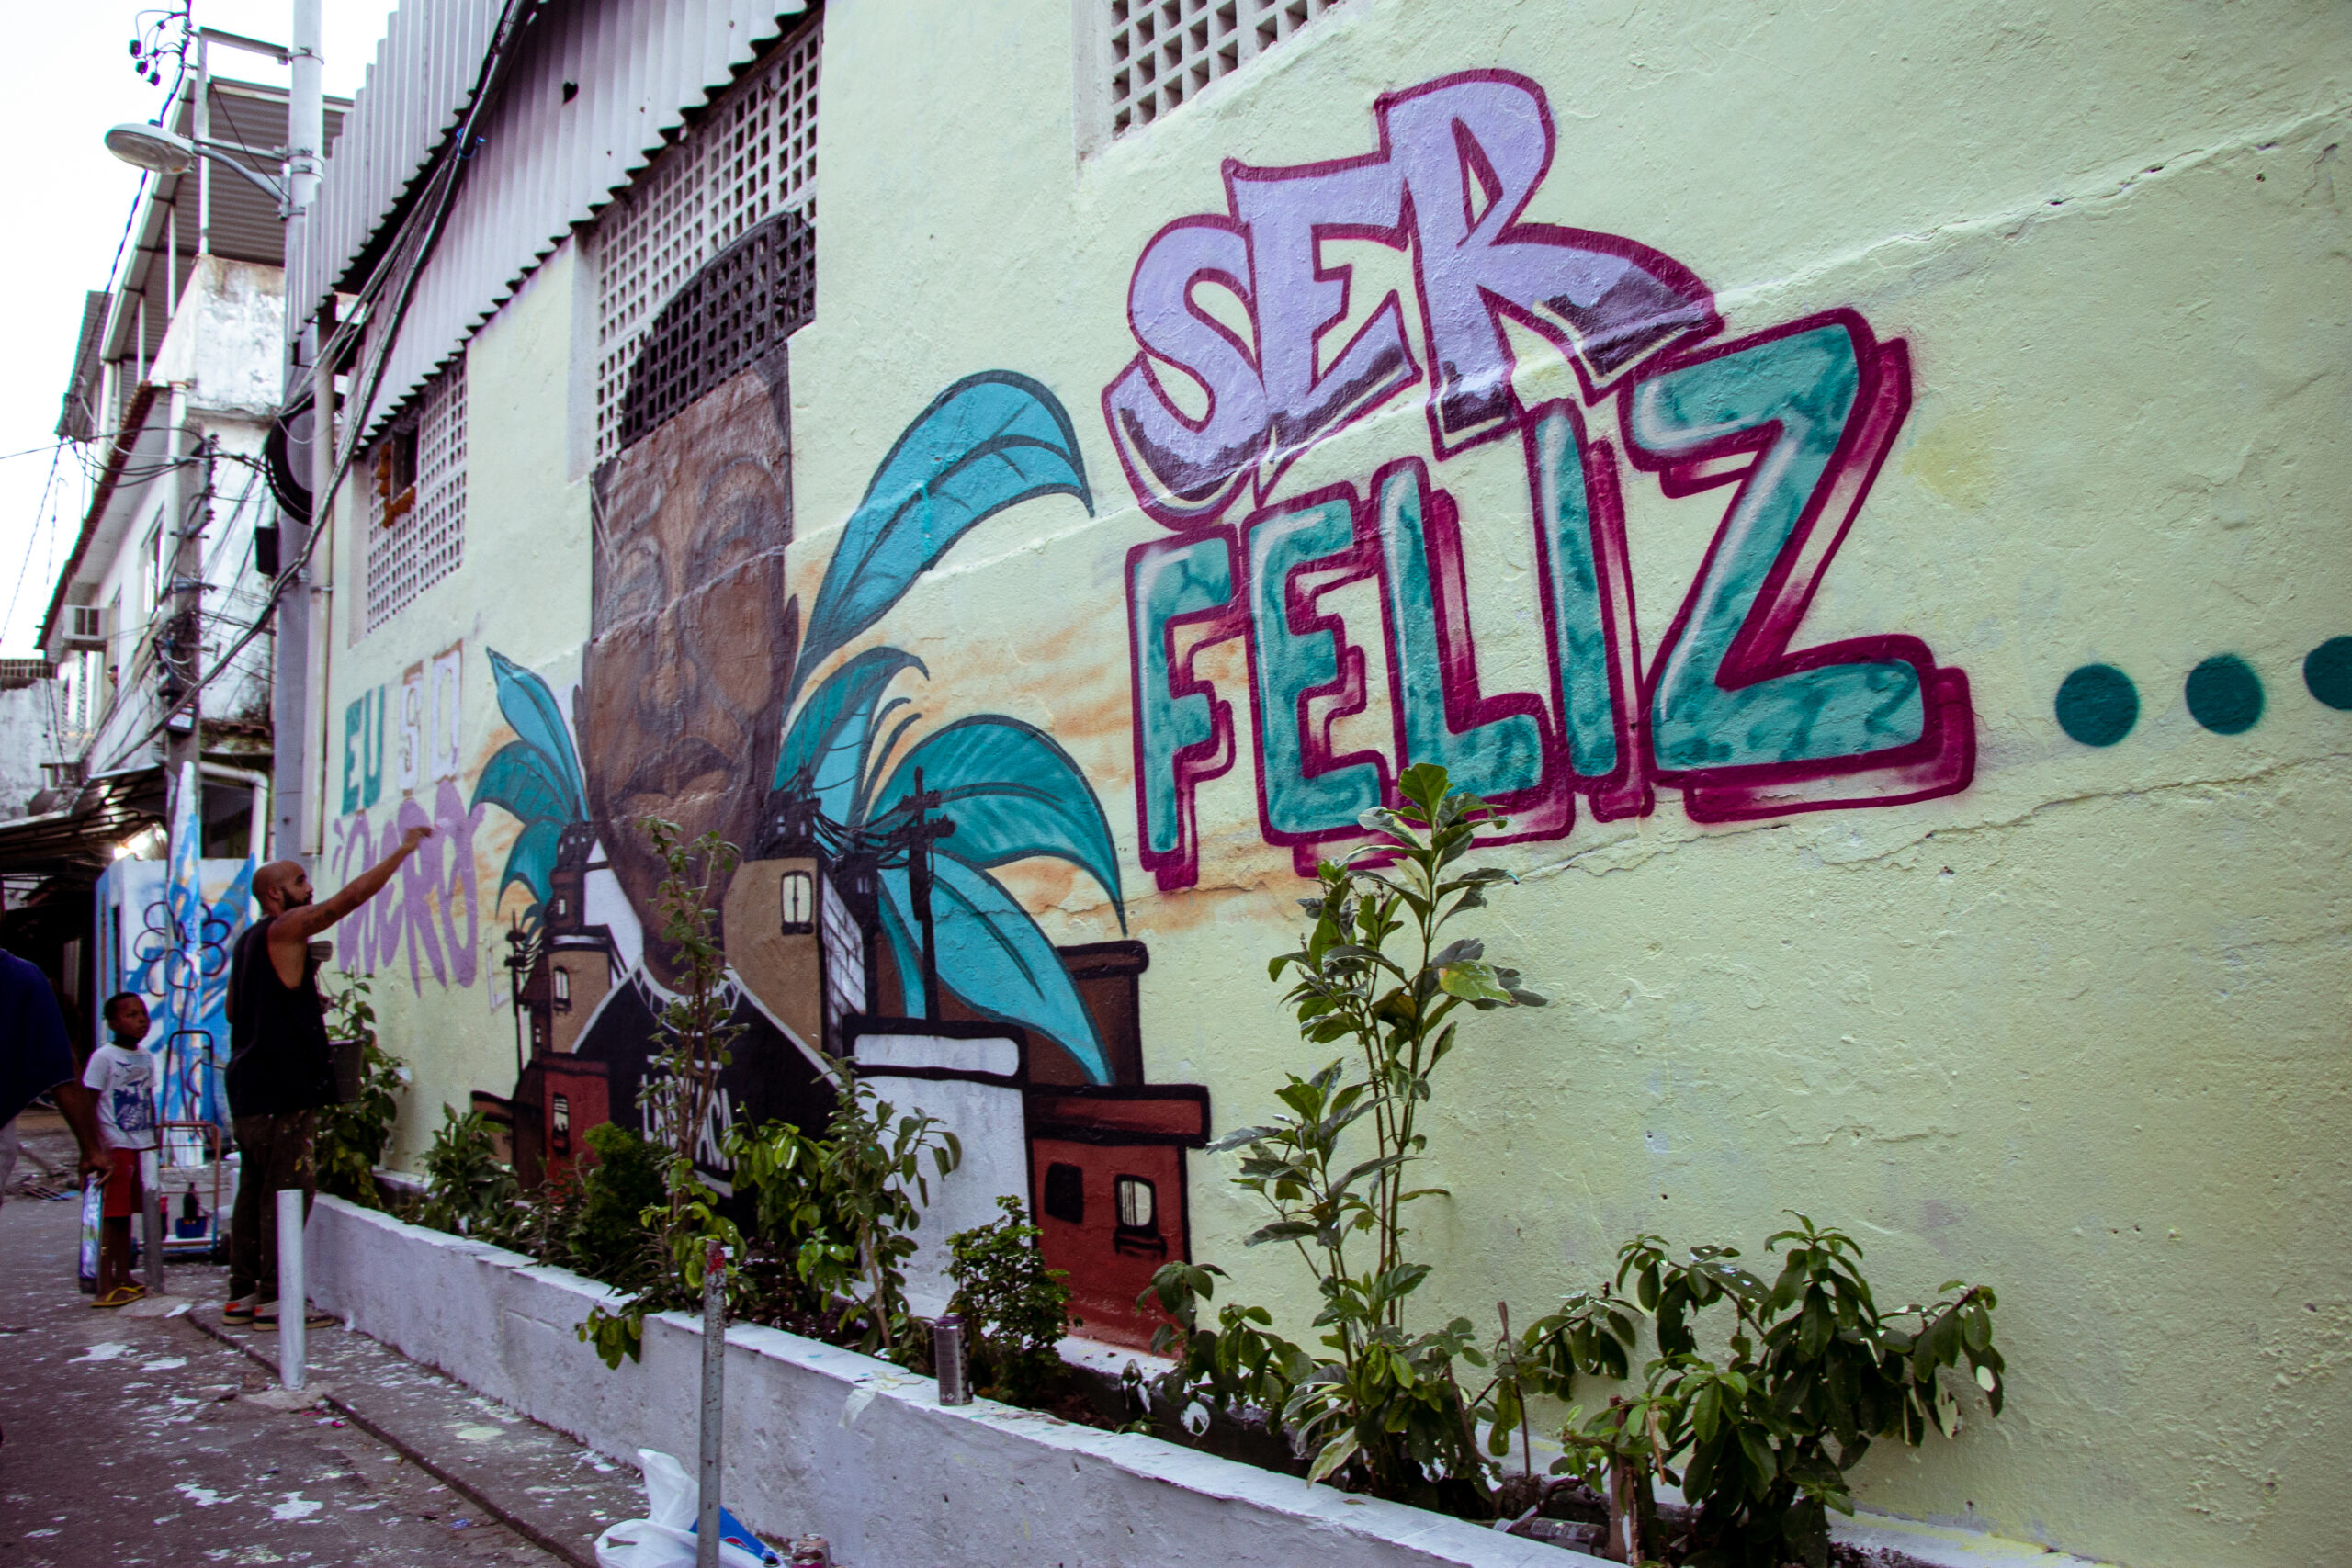 Visão de cria da favela sobre saúde mental